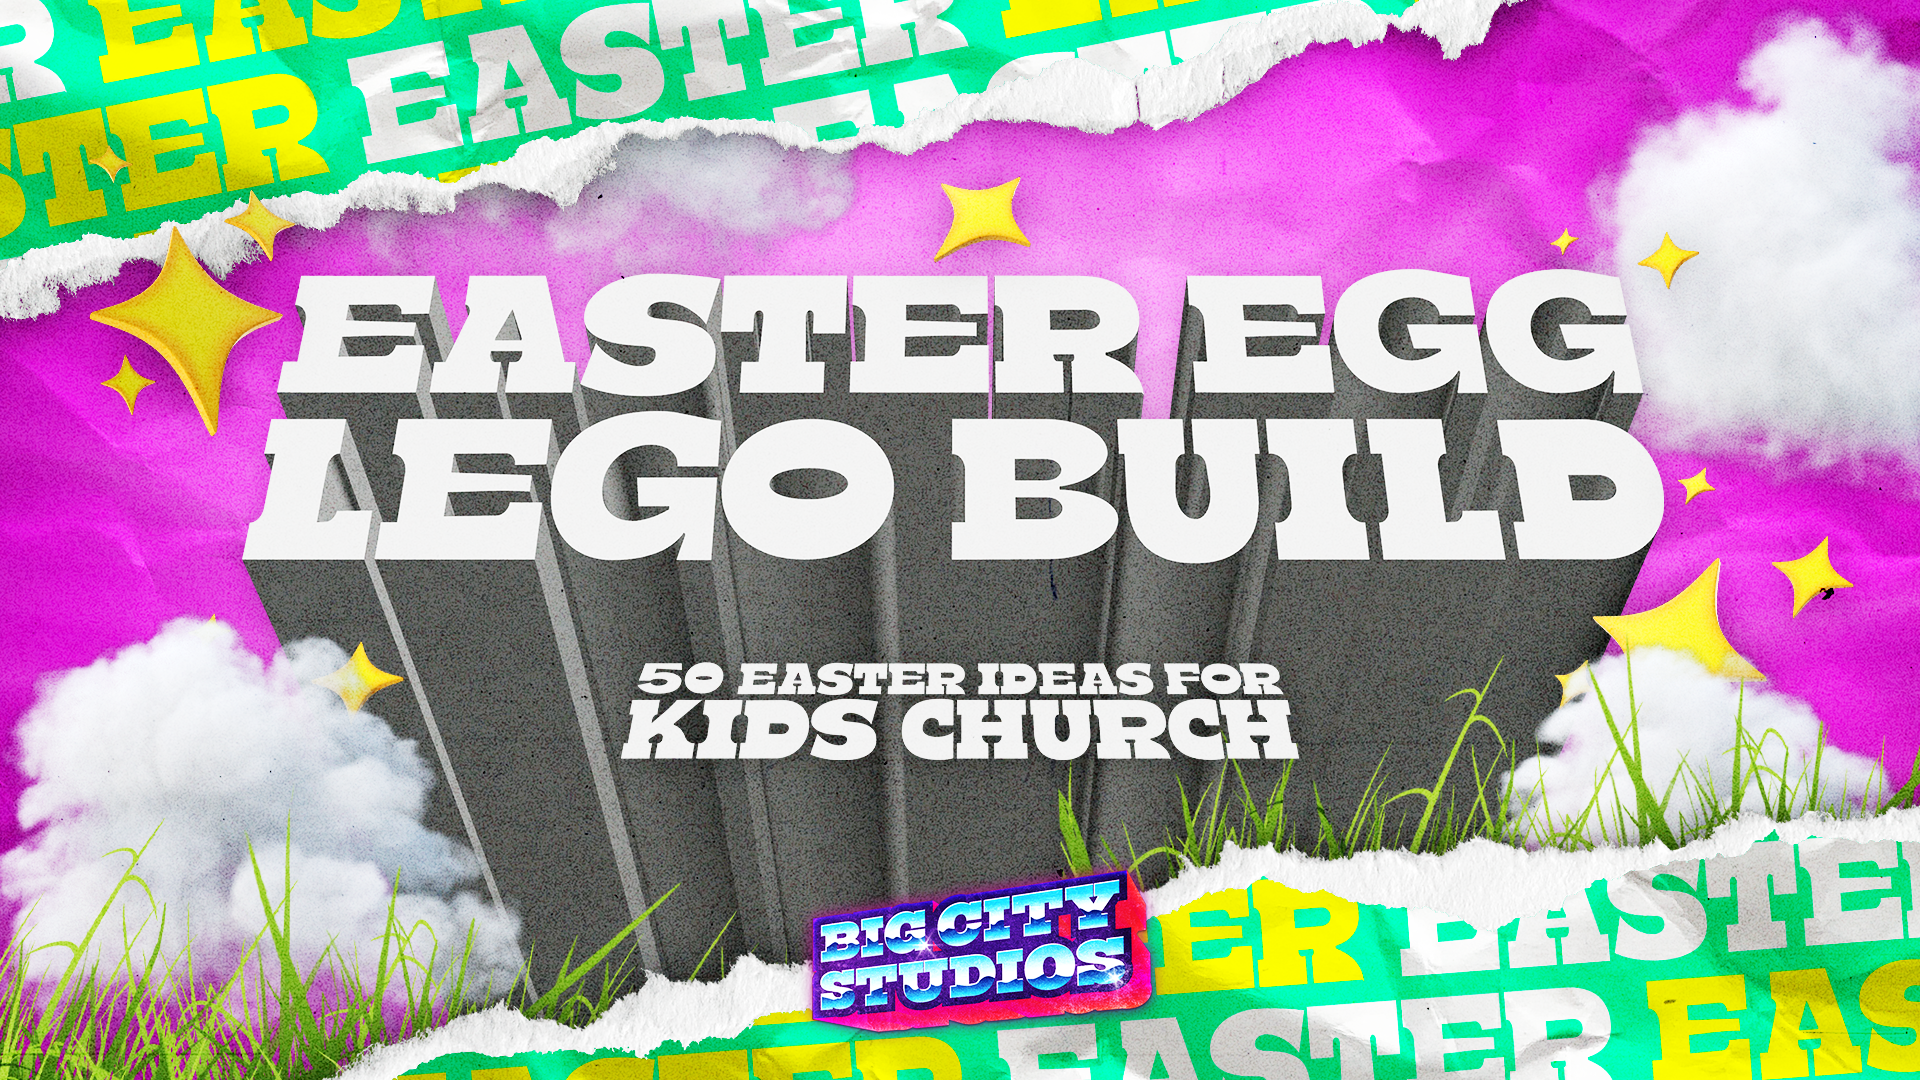 Easter Egg Lego Build